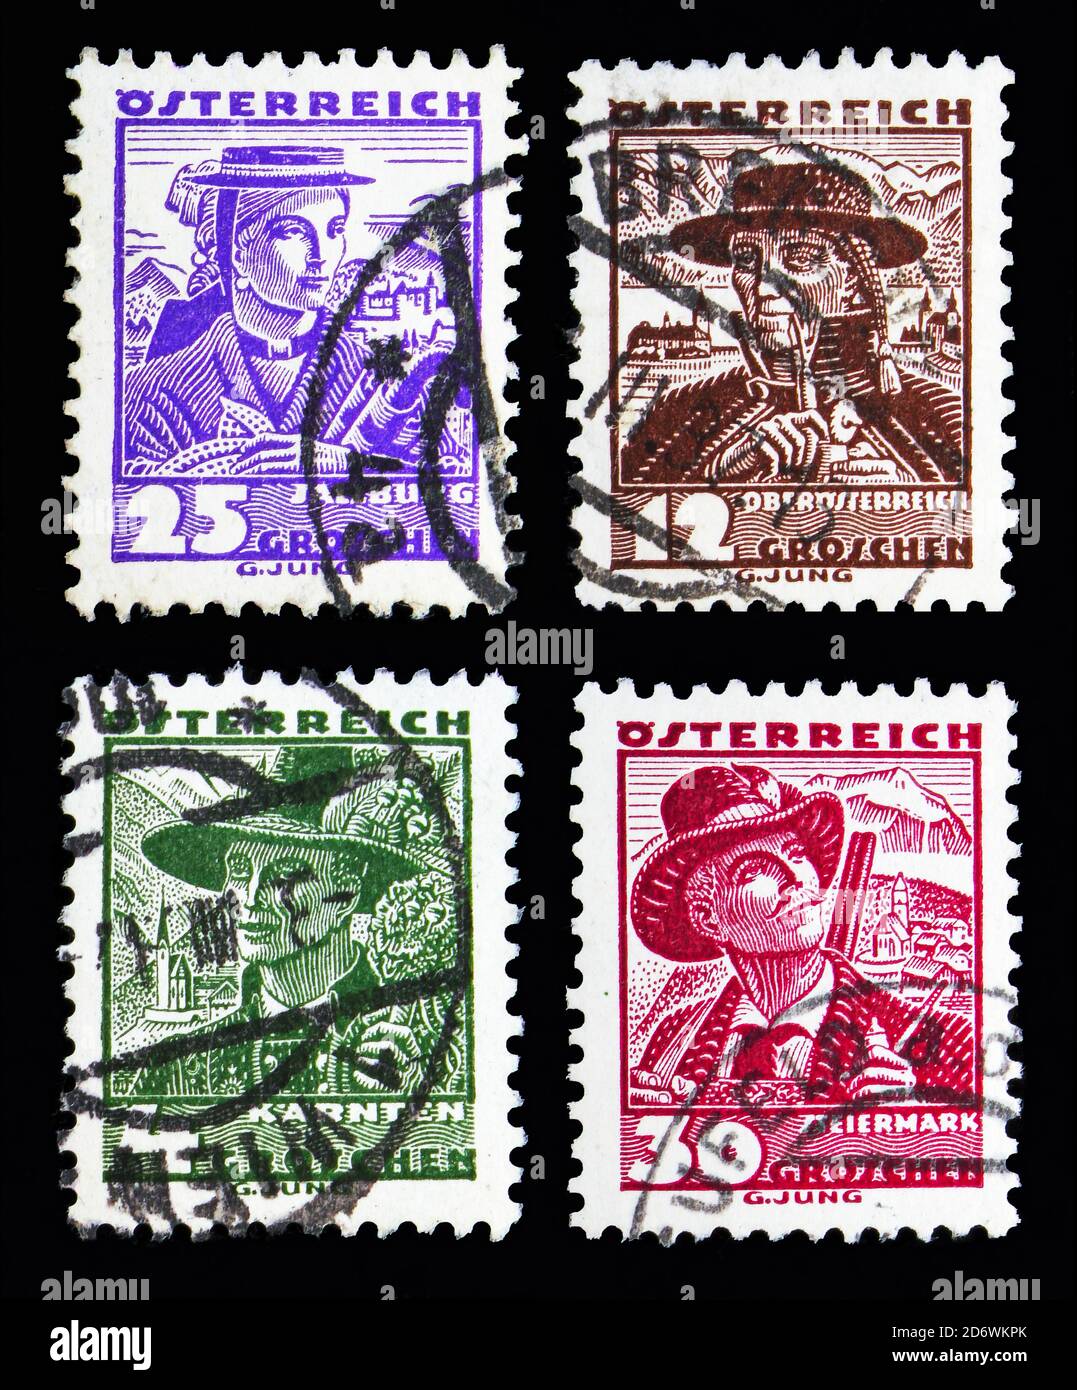 MOSKAU, RUSSLAND - 13. MAI 2018: Vier Briefmarken gedruckt in Österreich aus der Kostümserie, um 1934 Stockfoto